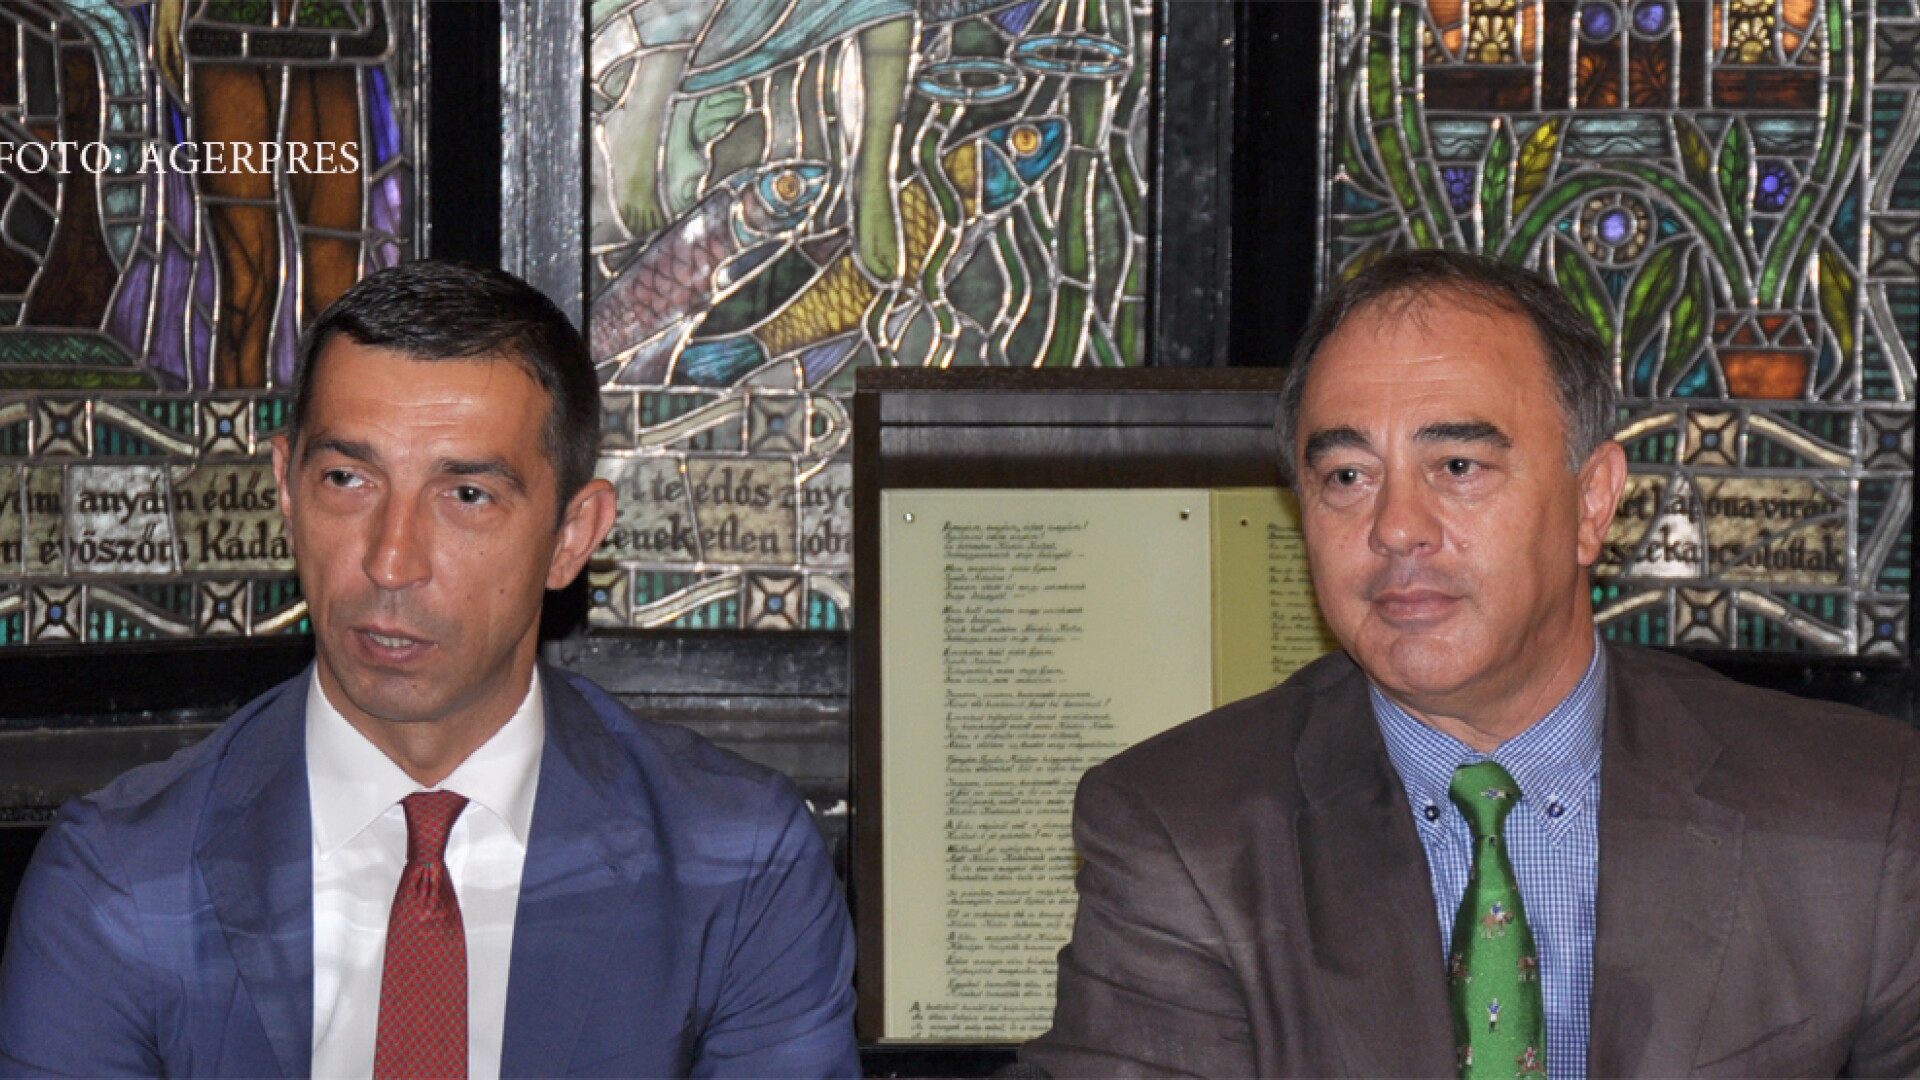 Presedintele CJ Mures, Ciprian Dobre (stg.), si primarul municipiului Targu Mures, Dorin Florea (dr.)